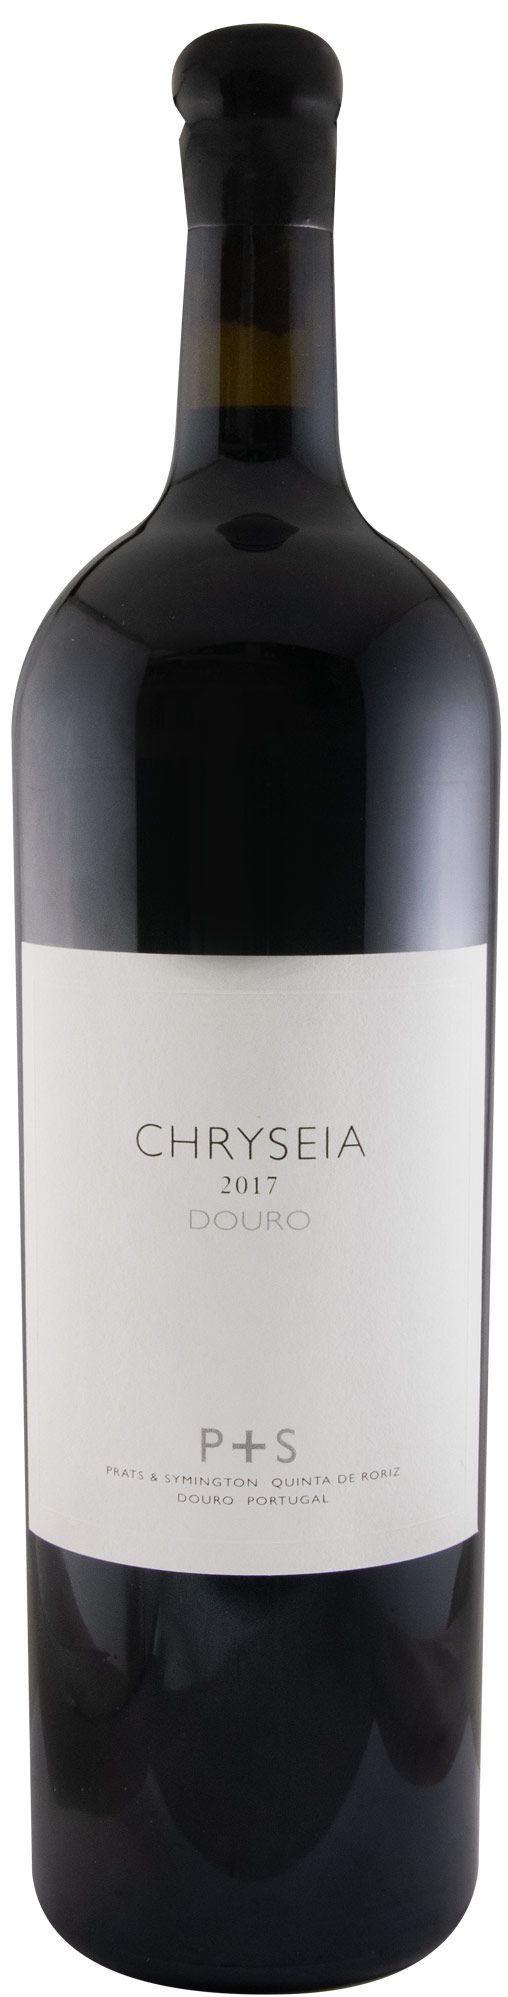 2017 Chryseia tinto 3L